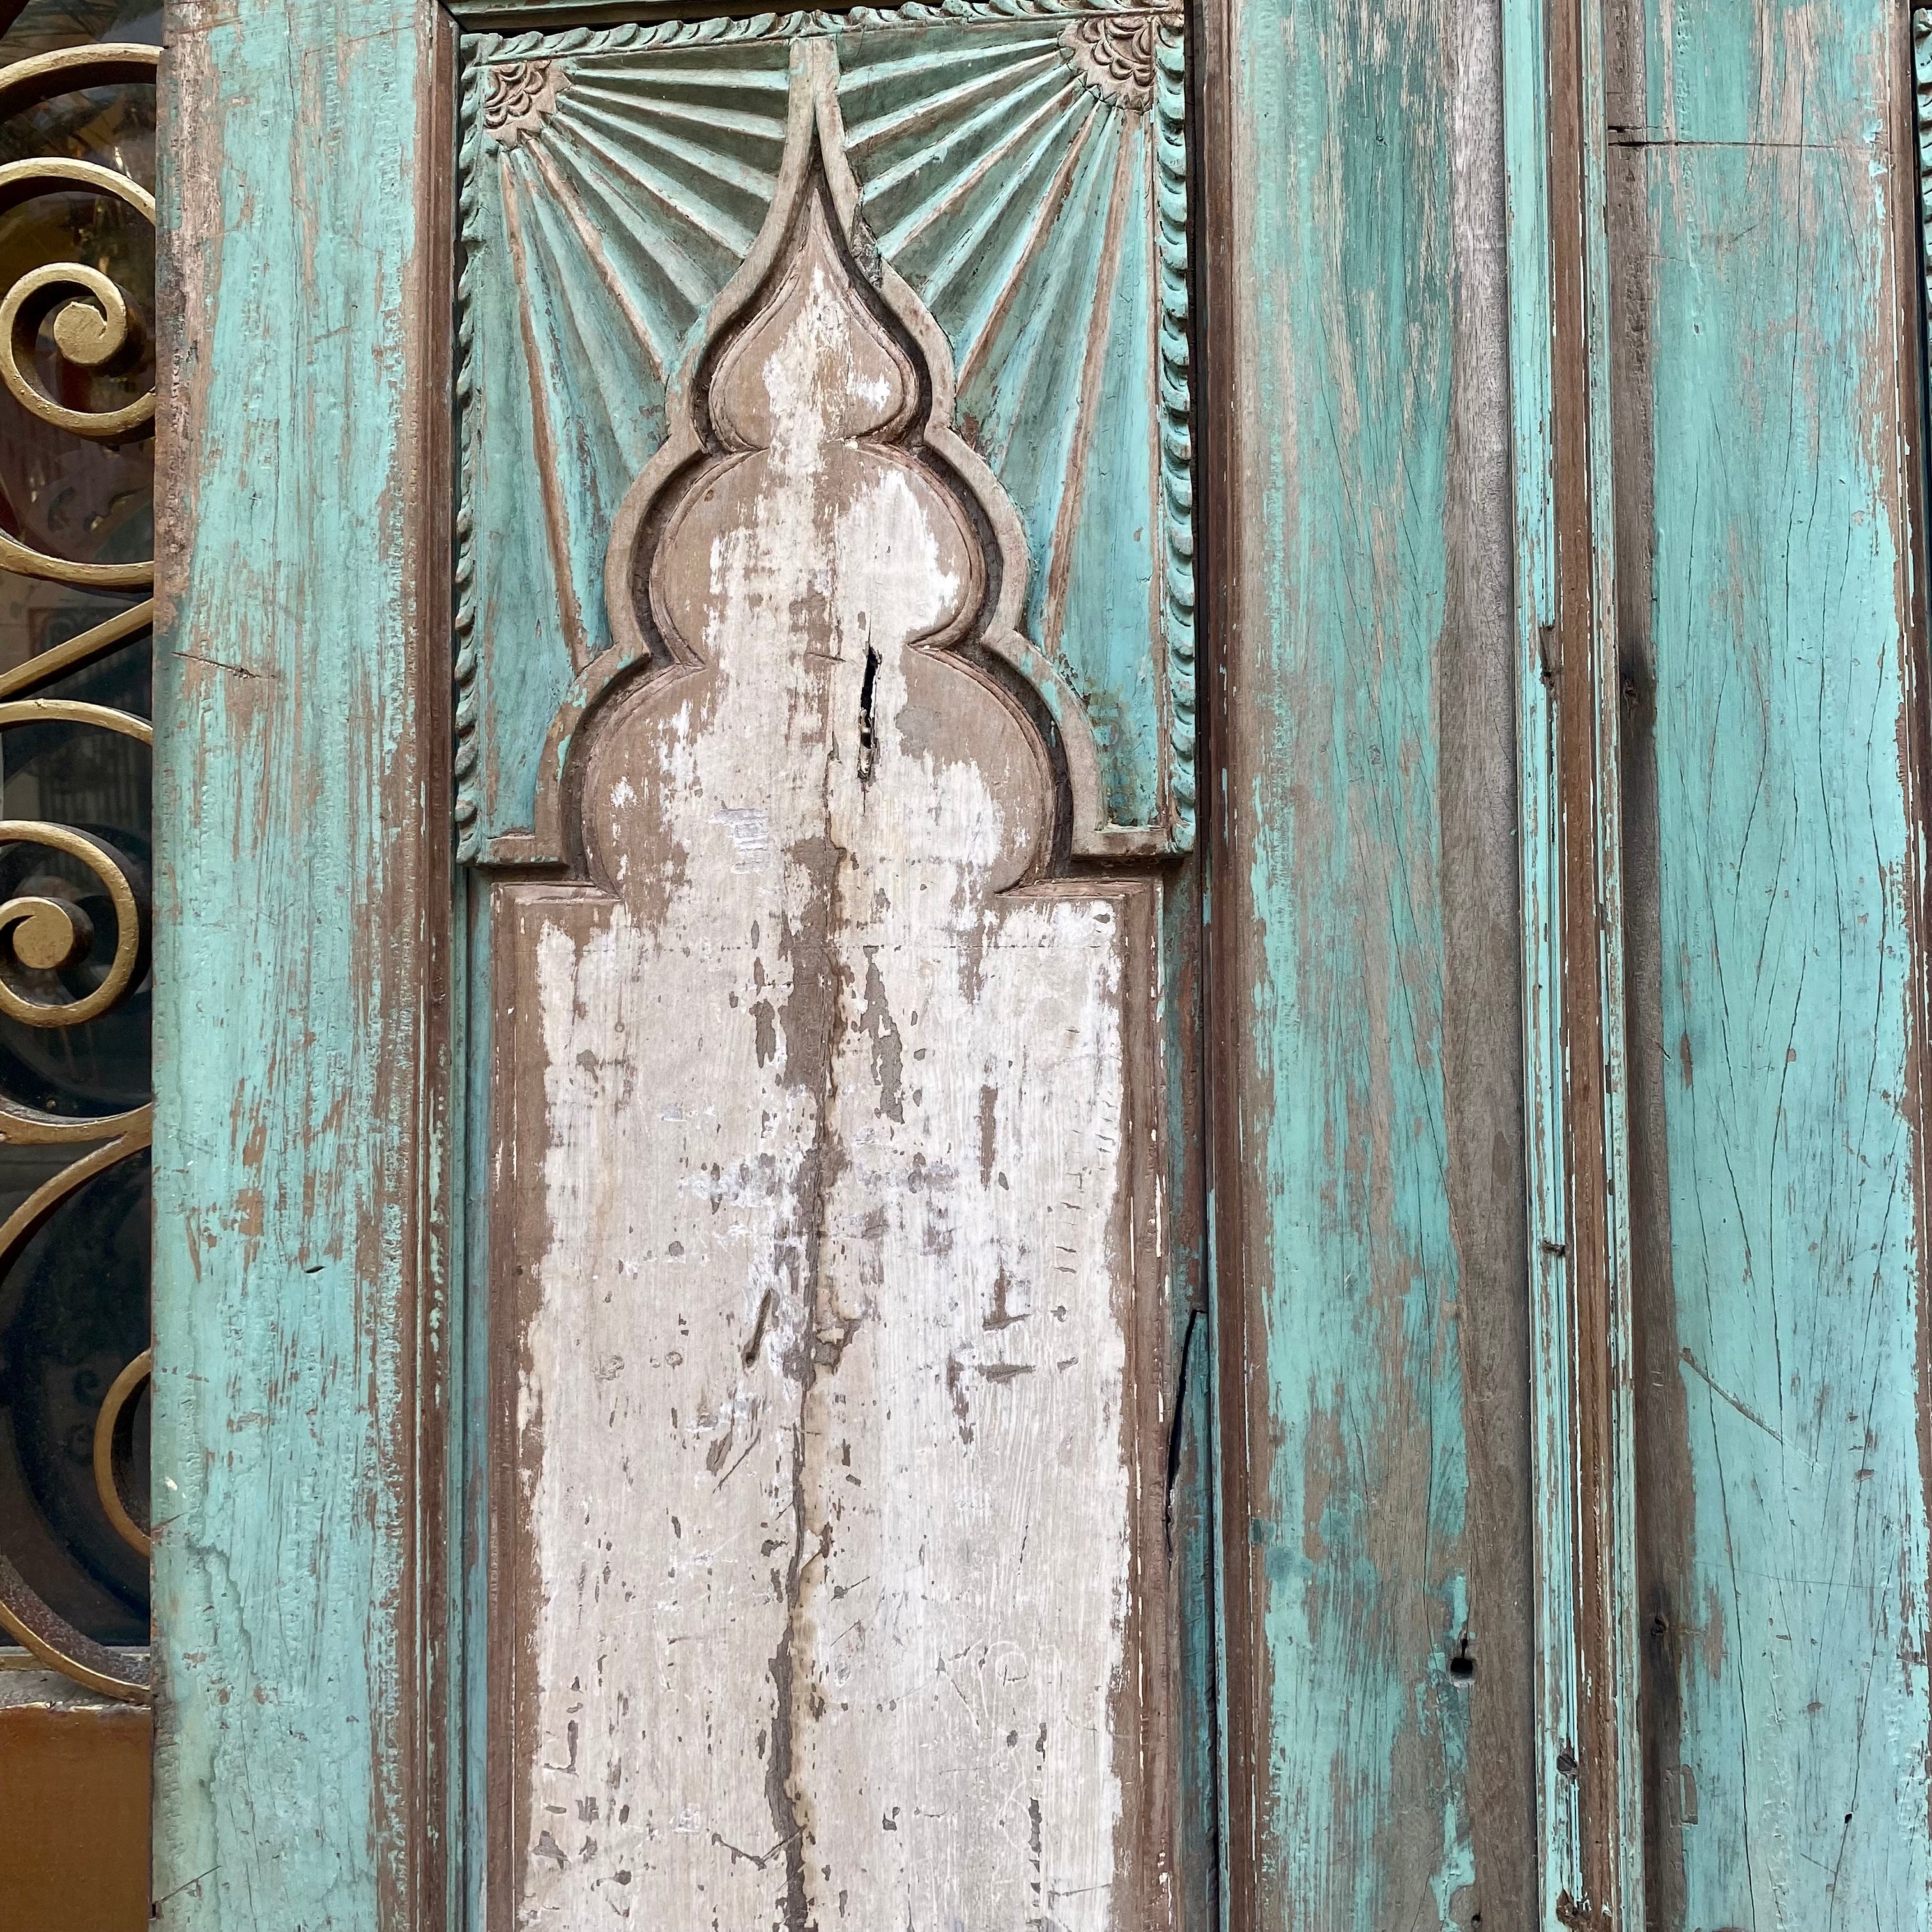 Distressed Vintage Indian Doors